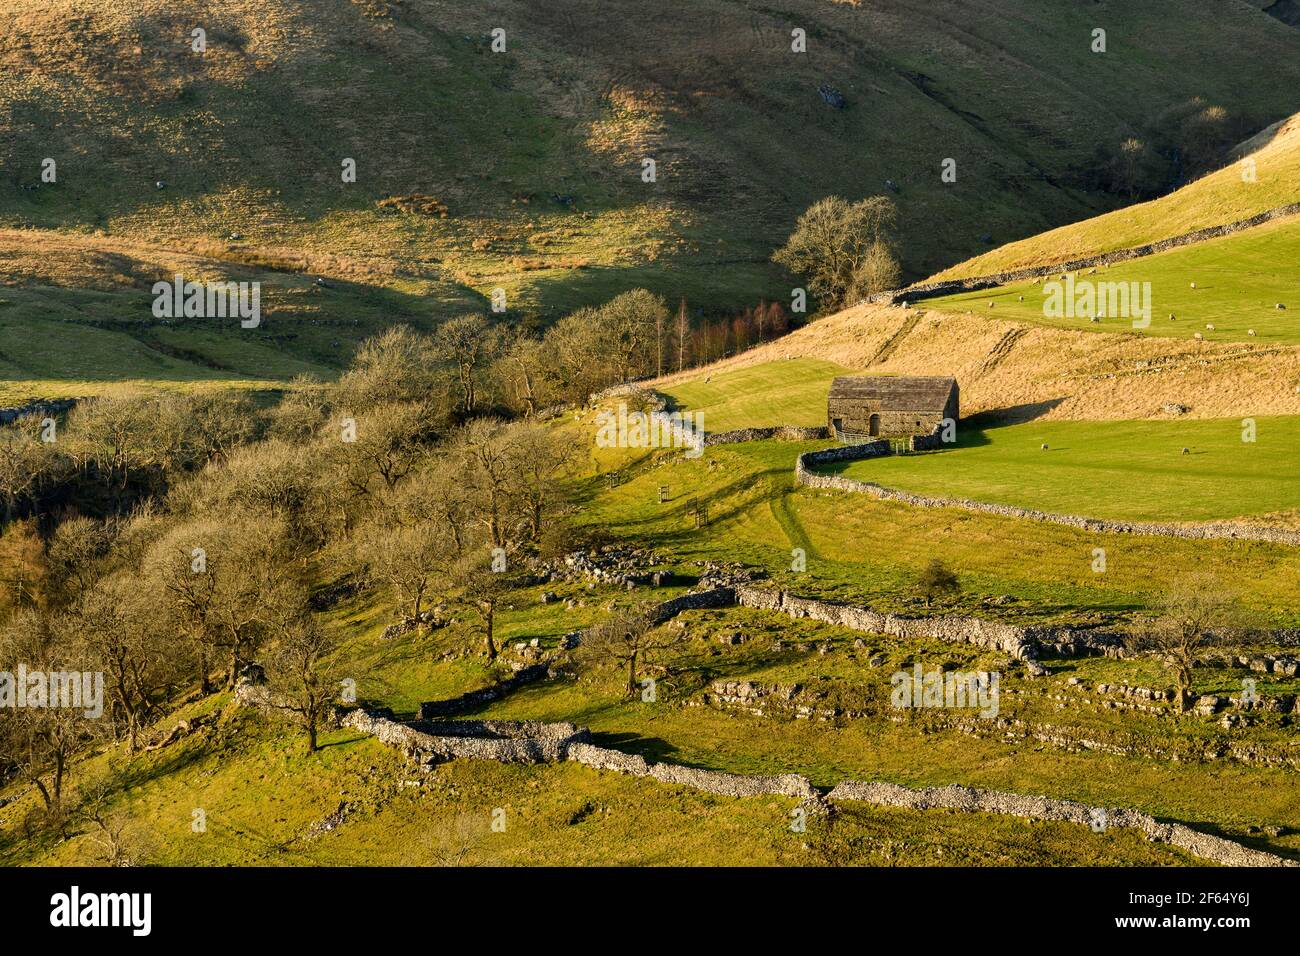 Malerische sonnige Wharfedale-Landschaft (Hochlandfjälle, Steinscheune, steile Hügel, Kalksteinwände, Schafe weiden Weiden) - Yorkshire Dales, England, Großbritannien. Stockfoto